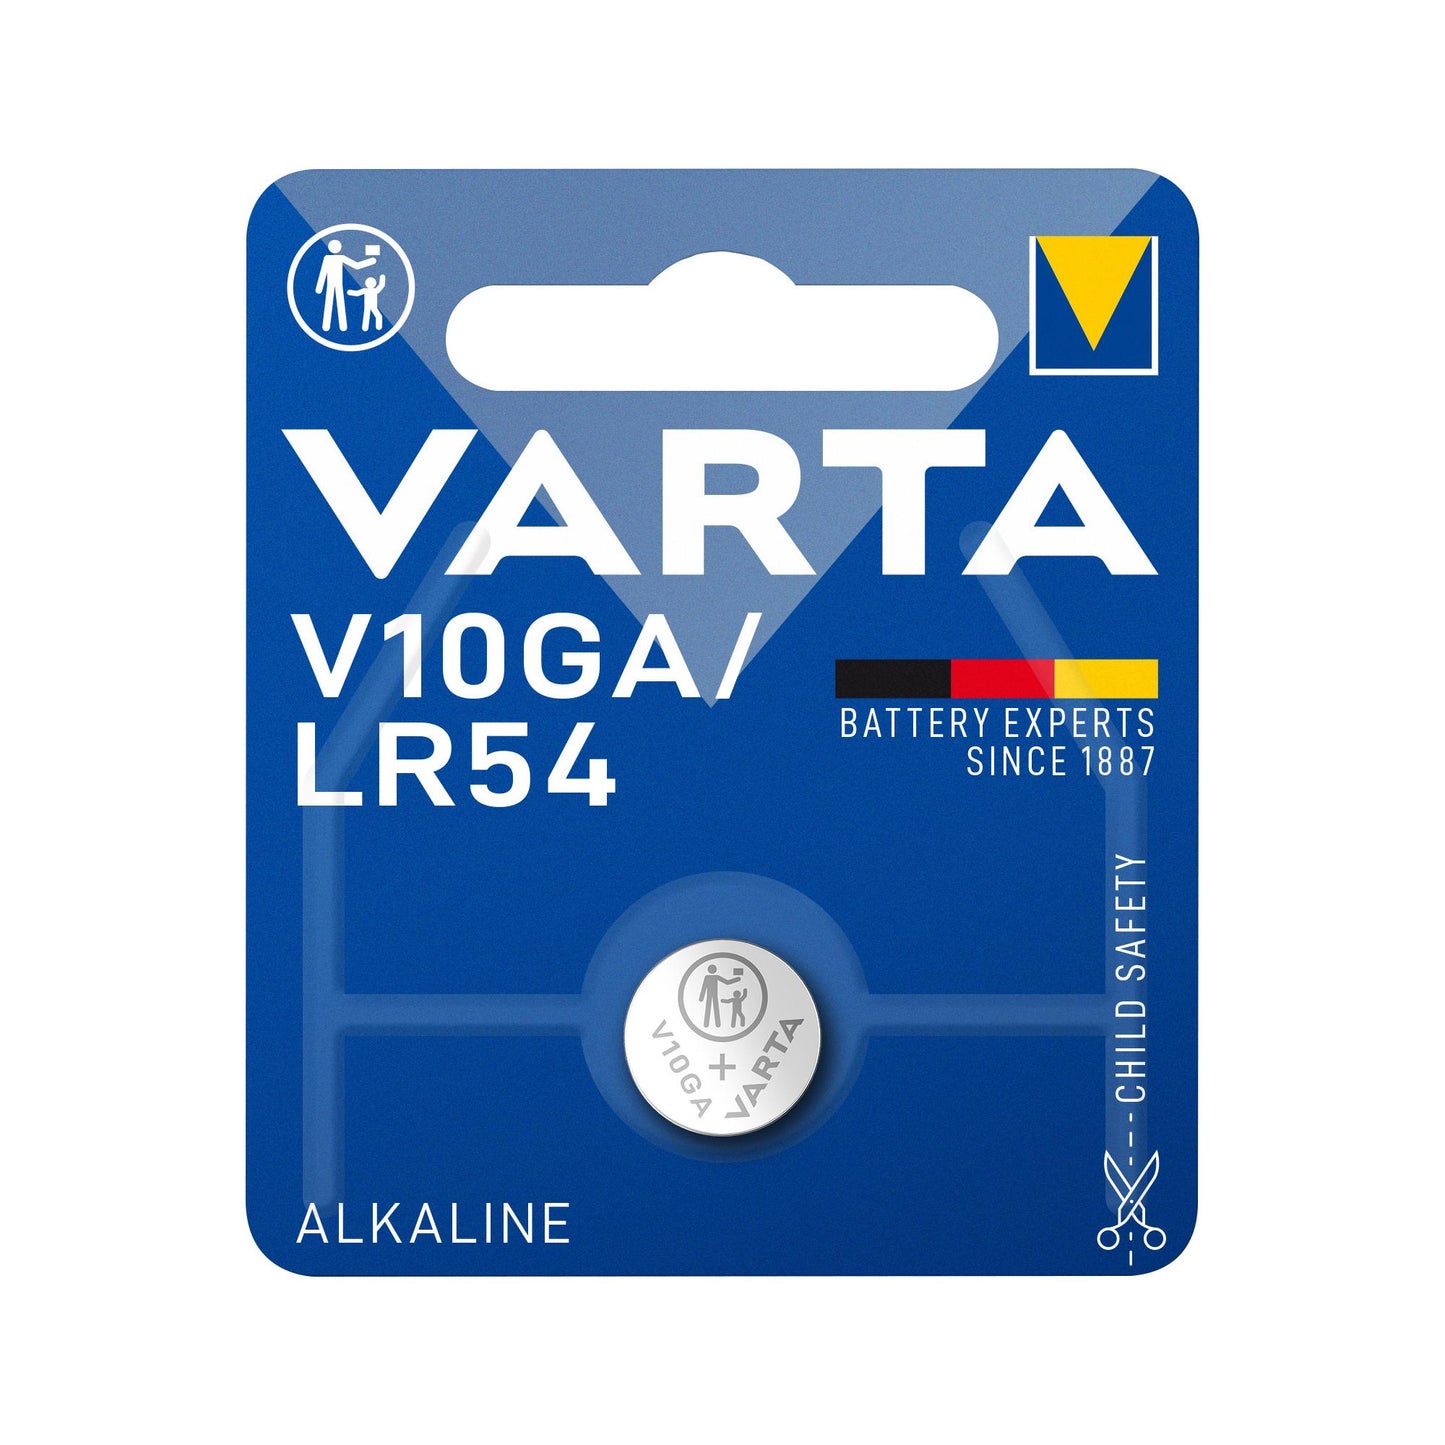 VARTA Batterie Alkaline Knopfzelle LR54, V10GA, 1.5V Electronics, Retail Blister (1-Pack)